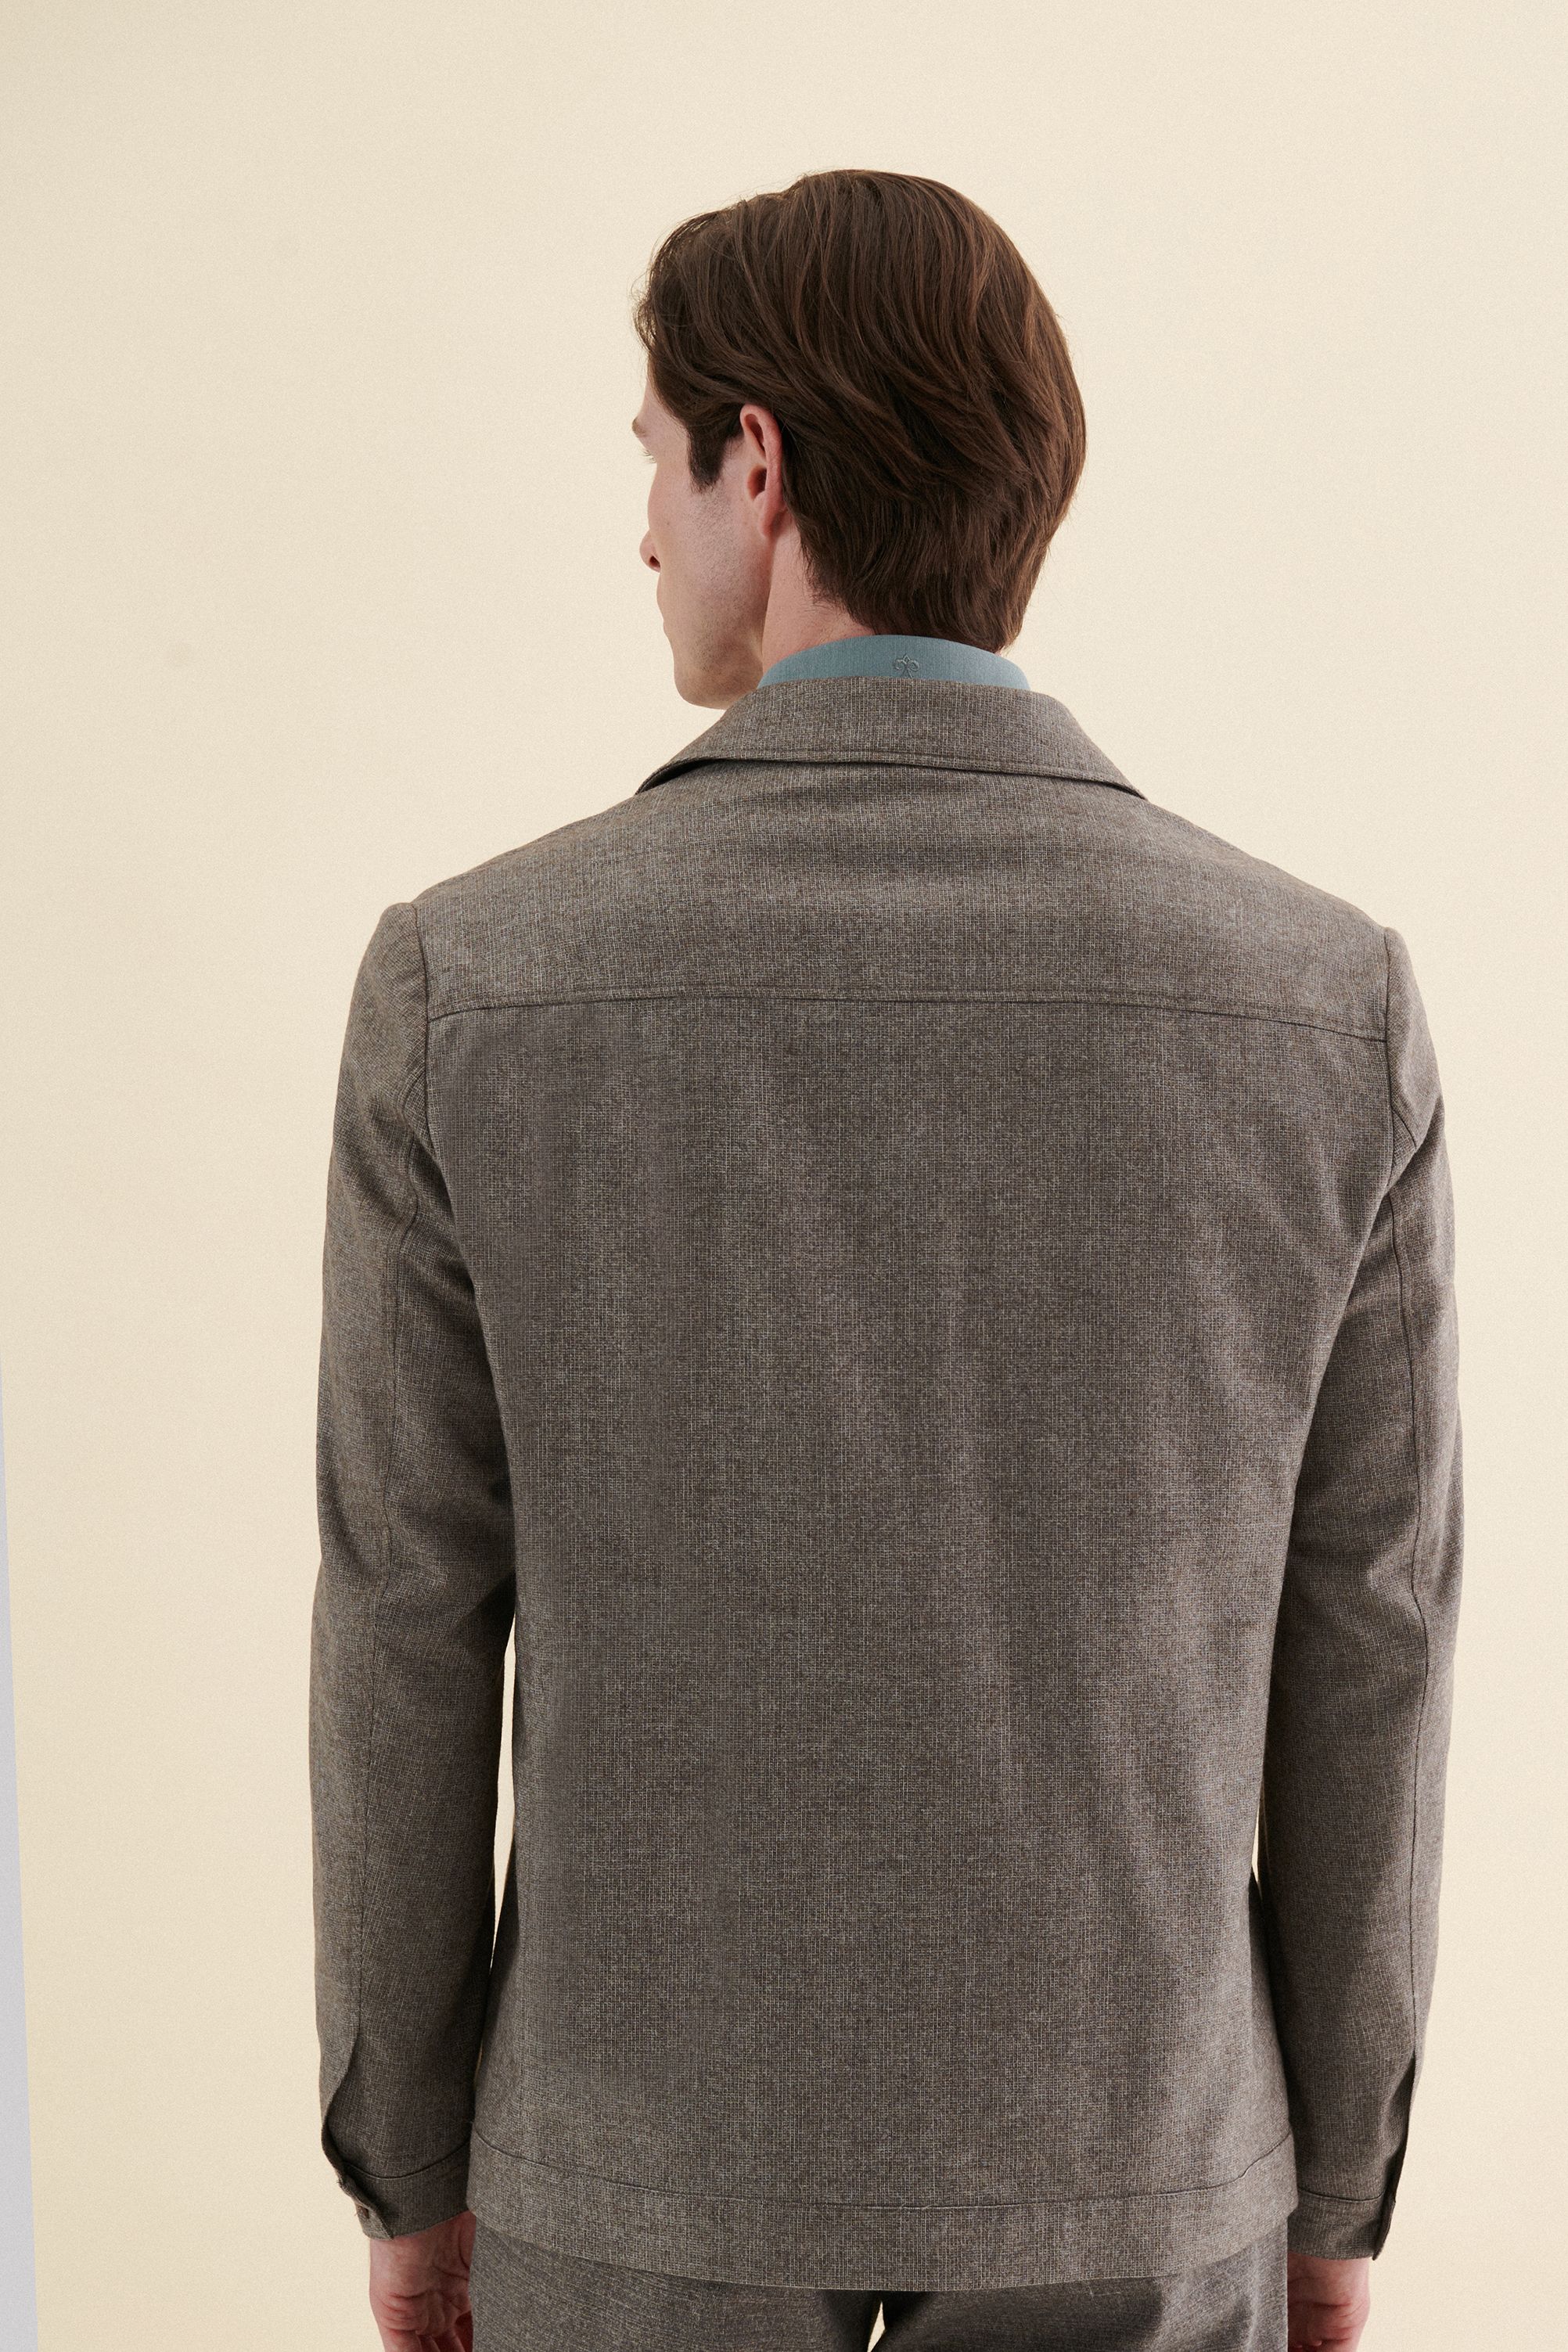 Damat Tween Damat Comfort Kahverengi Melanj %100 Yün Kumaş Ceket. 4